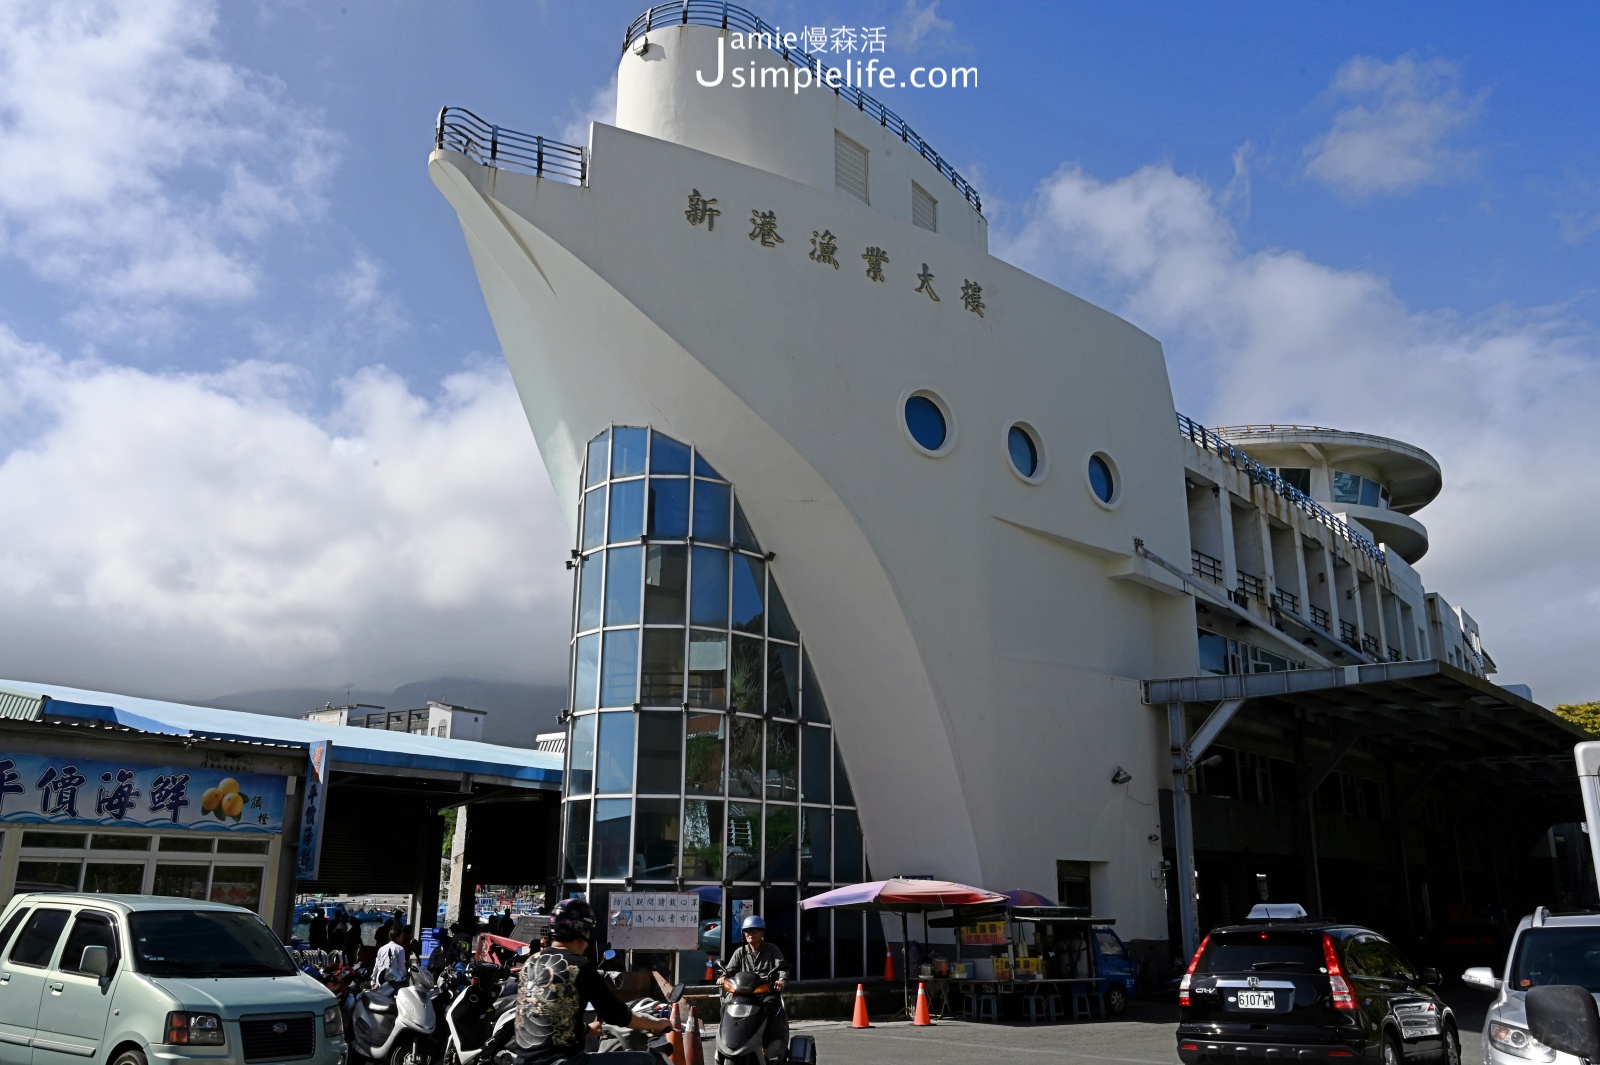 台東成功漁港白色船型漁業大樓、不停歇吆喝聲